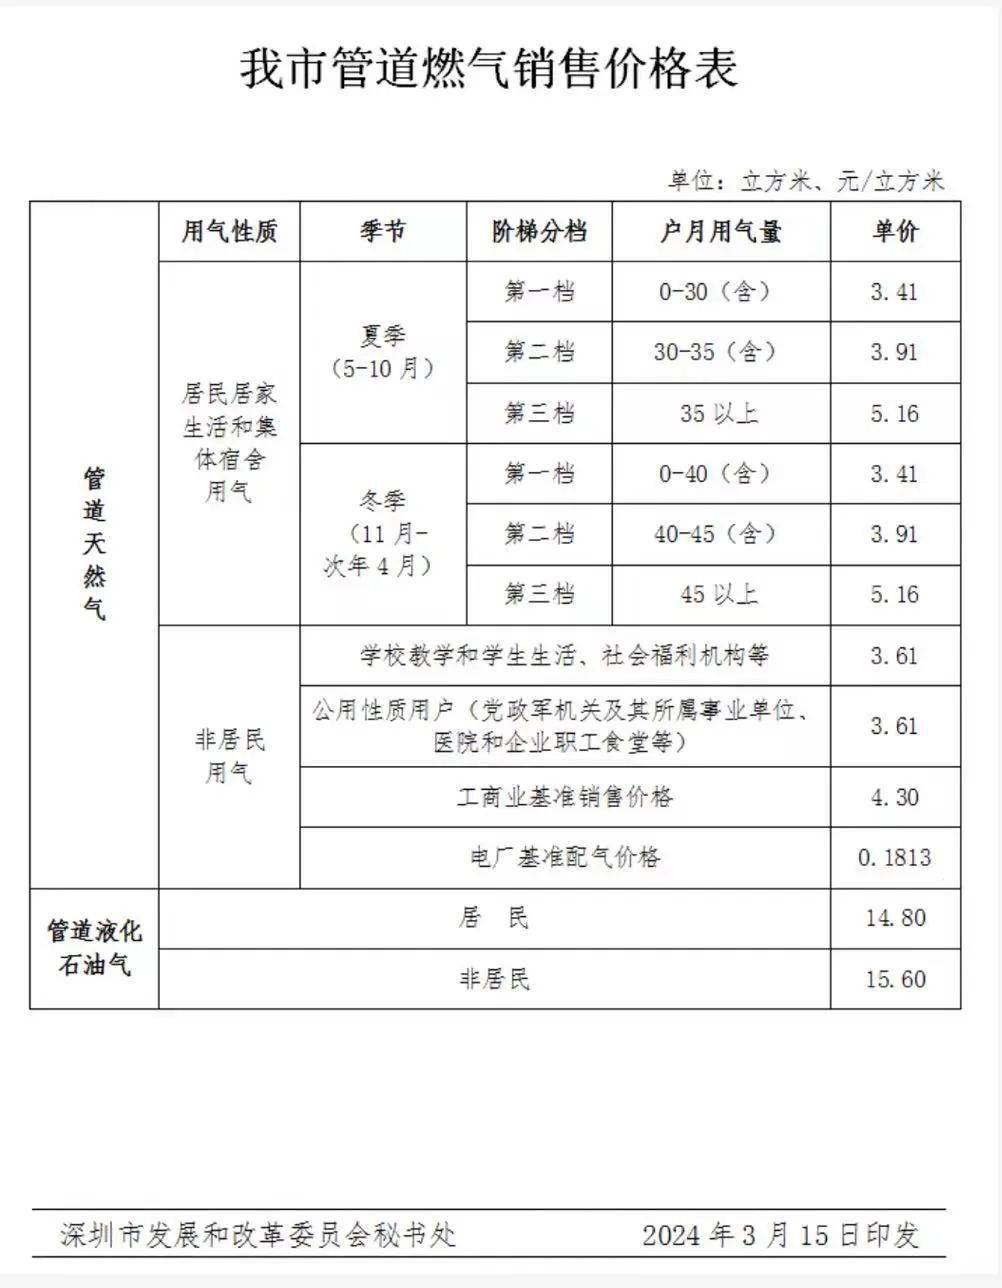 深圳管道天然气价格调整